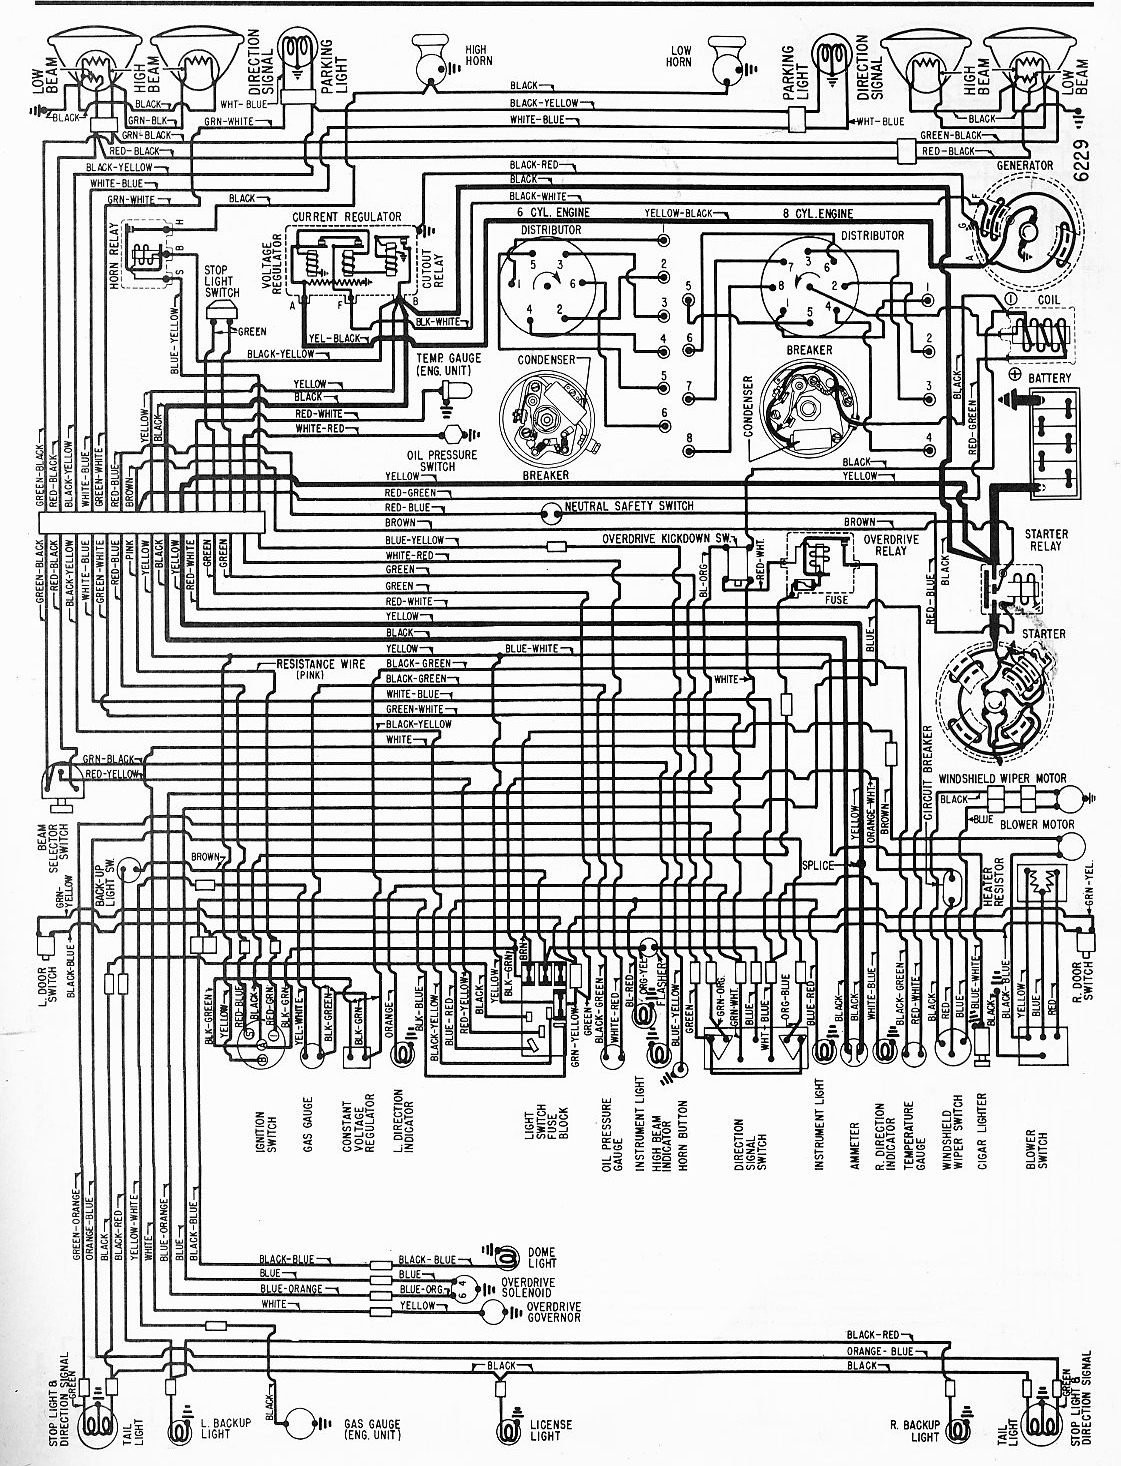 Speed Tech Lights Wiring Diagram Speed Tech Lights Wiring Diagram Elegant I Have A 1962